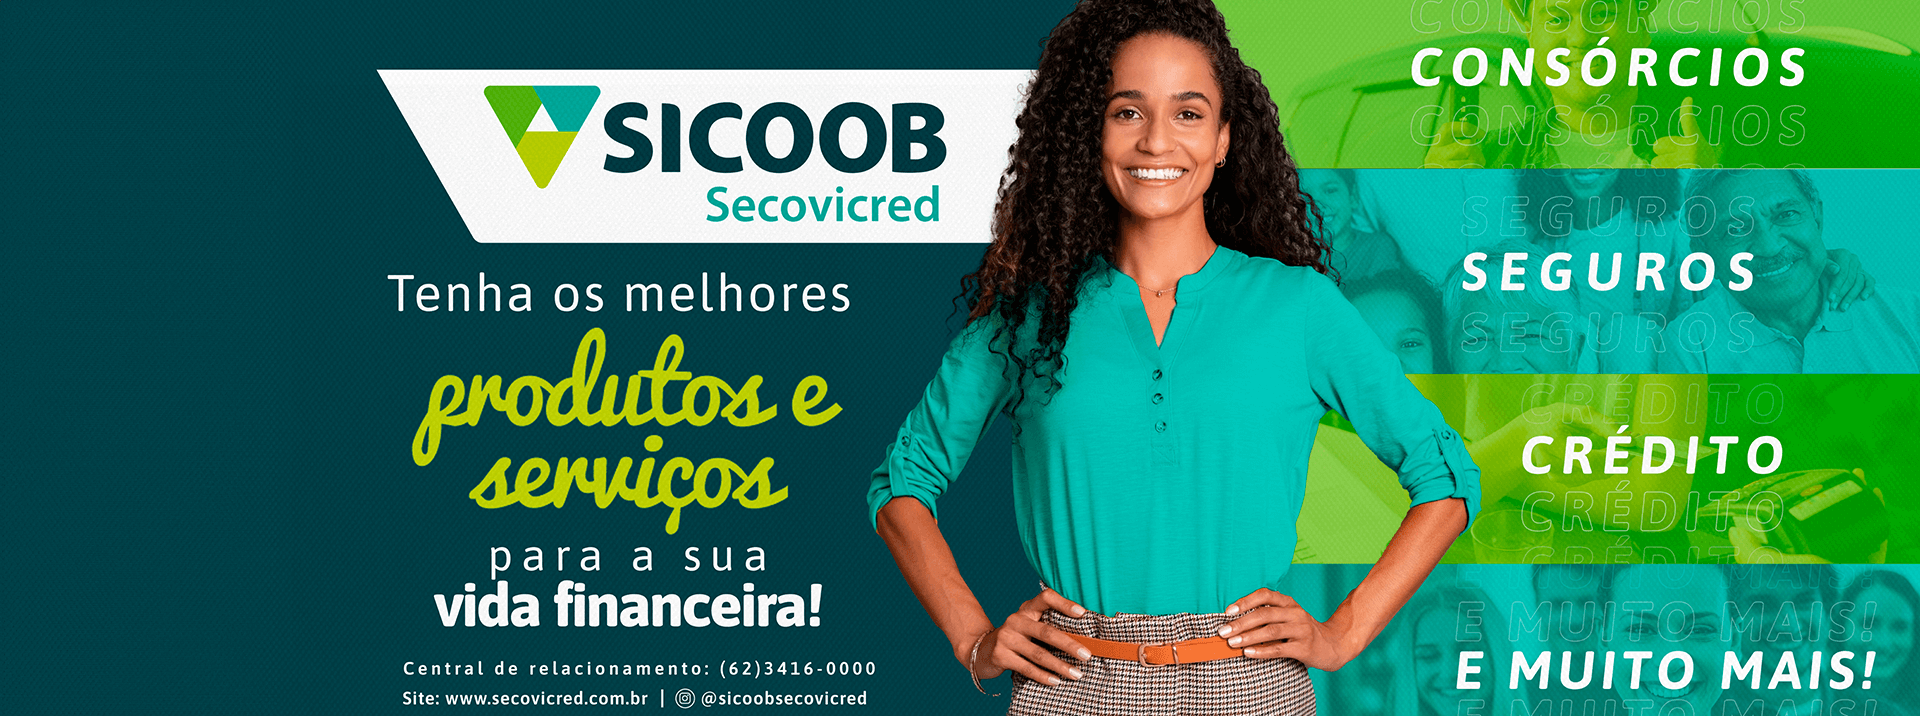 Sicoob Secovicred - Produtos e serviços